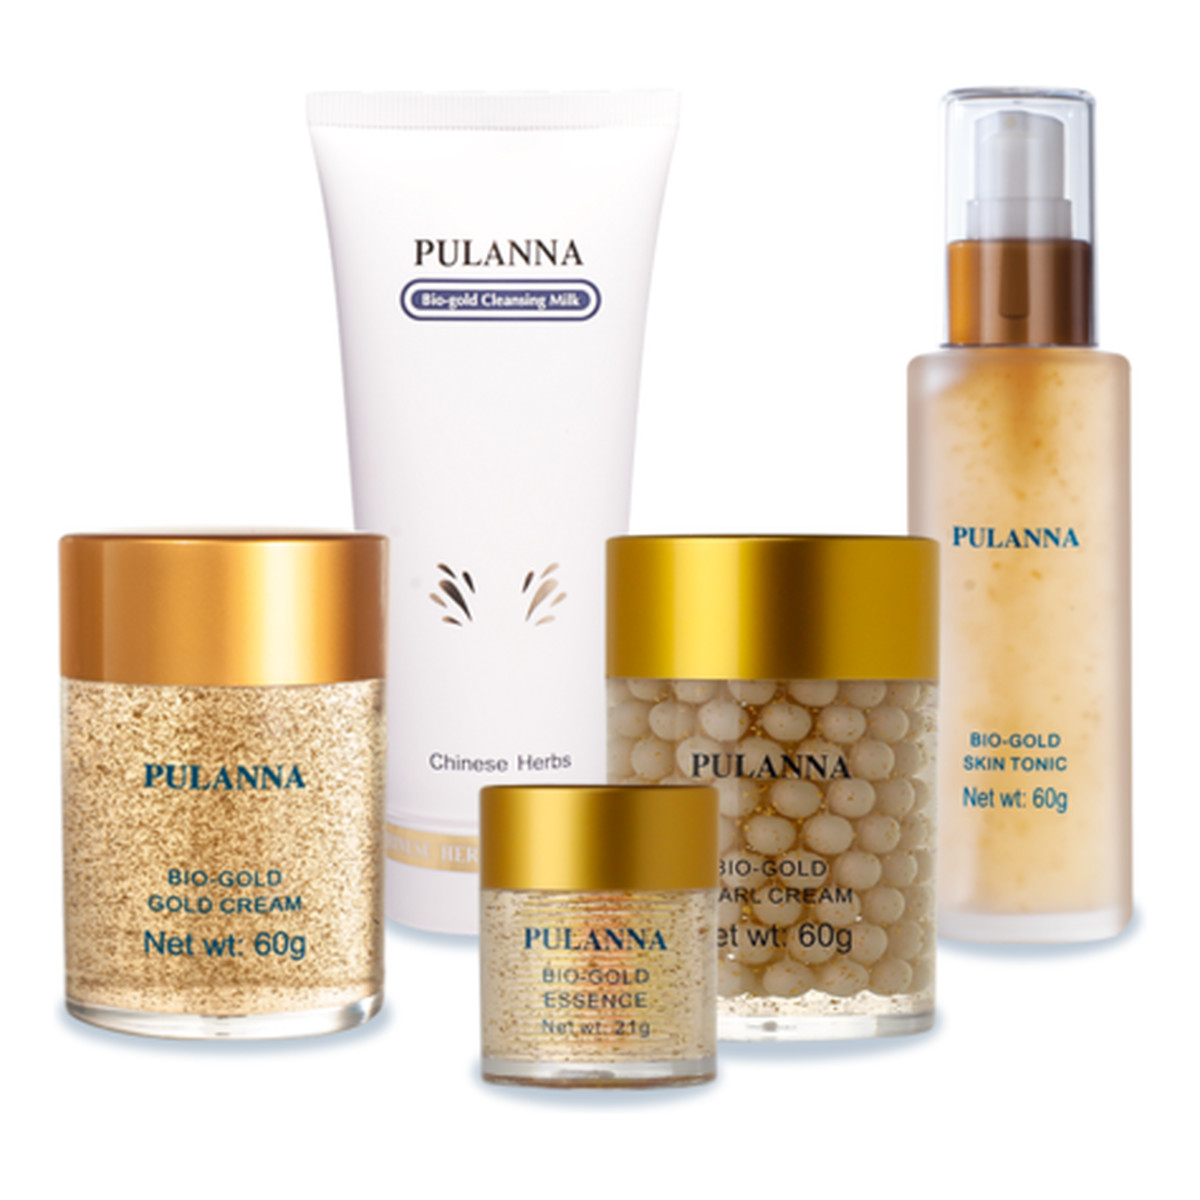 Pulanna Bio-Gold Zestaw kosmetyków Krem ze złotem + Żel ze złotem pod oczy + Mleczko oczyszczające do twarzy + Krem perłowy ze złotem + Tonik ze złotem